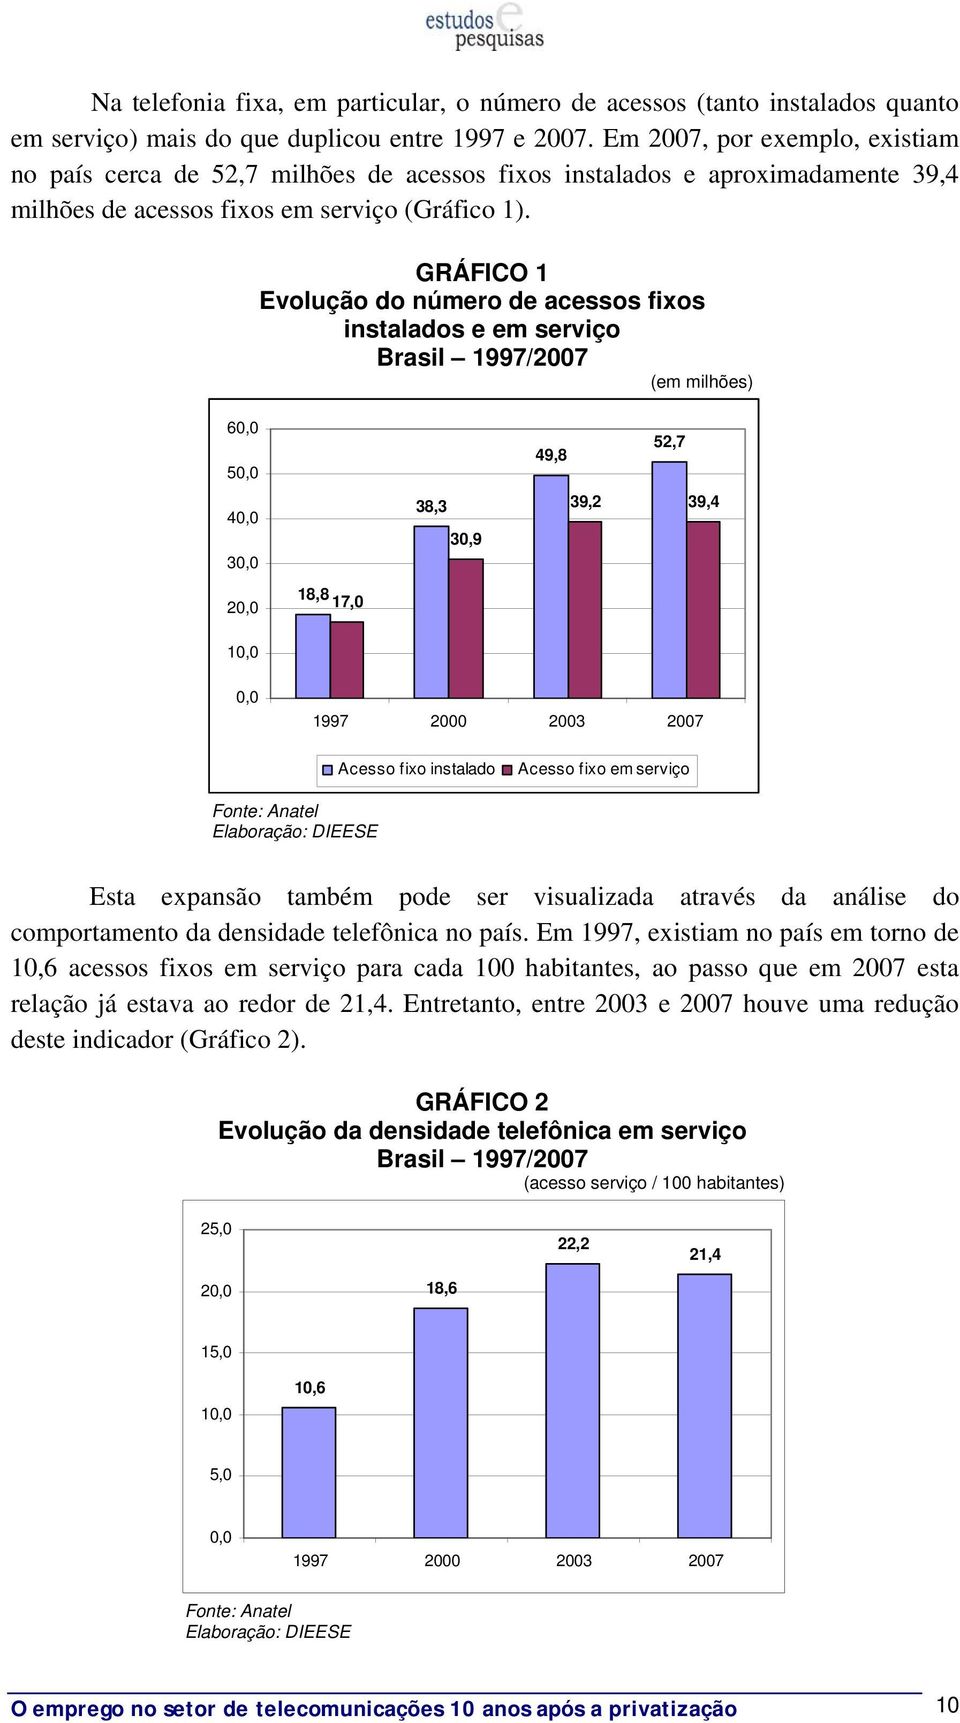 GRÁFICO 1 Evolução do número de acessos fixos instalados e em serviço Brasil 1997/2007 (em milhões) 60,0 50,0 40,0 30,0 20,0 18,8 17,0 38,3 30,9 49,8 52,7 39,2 39,4 10,0 0,0 1997 2000 2003 2007